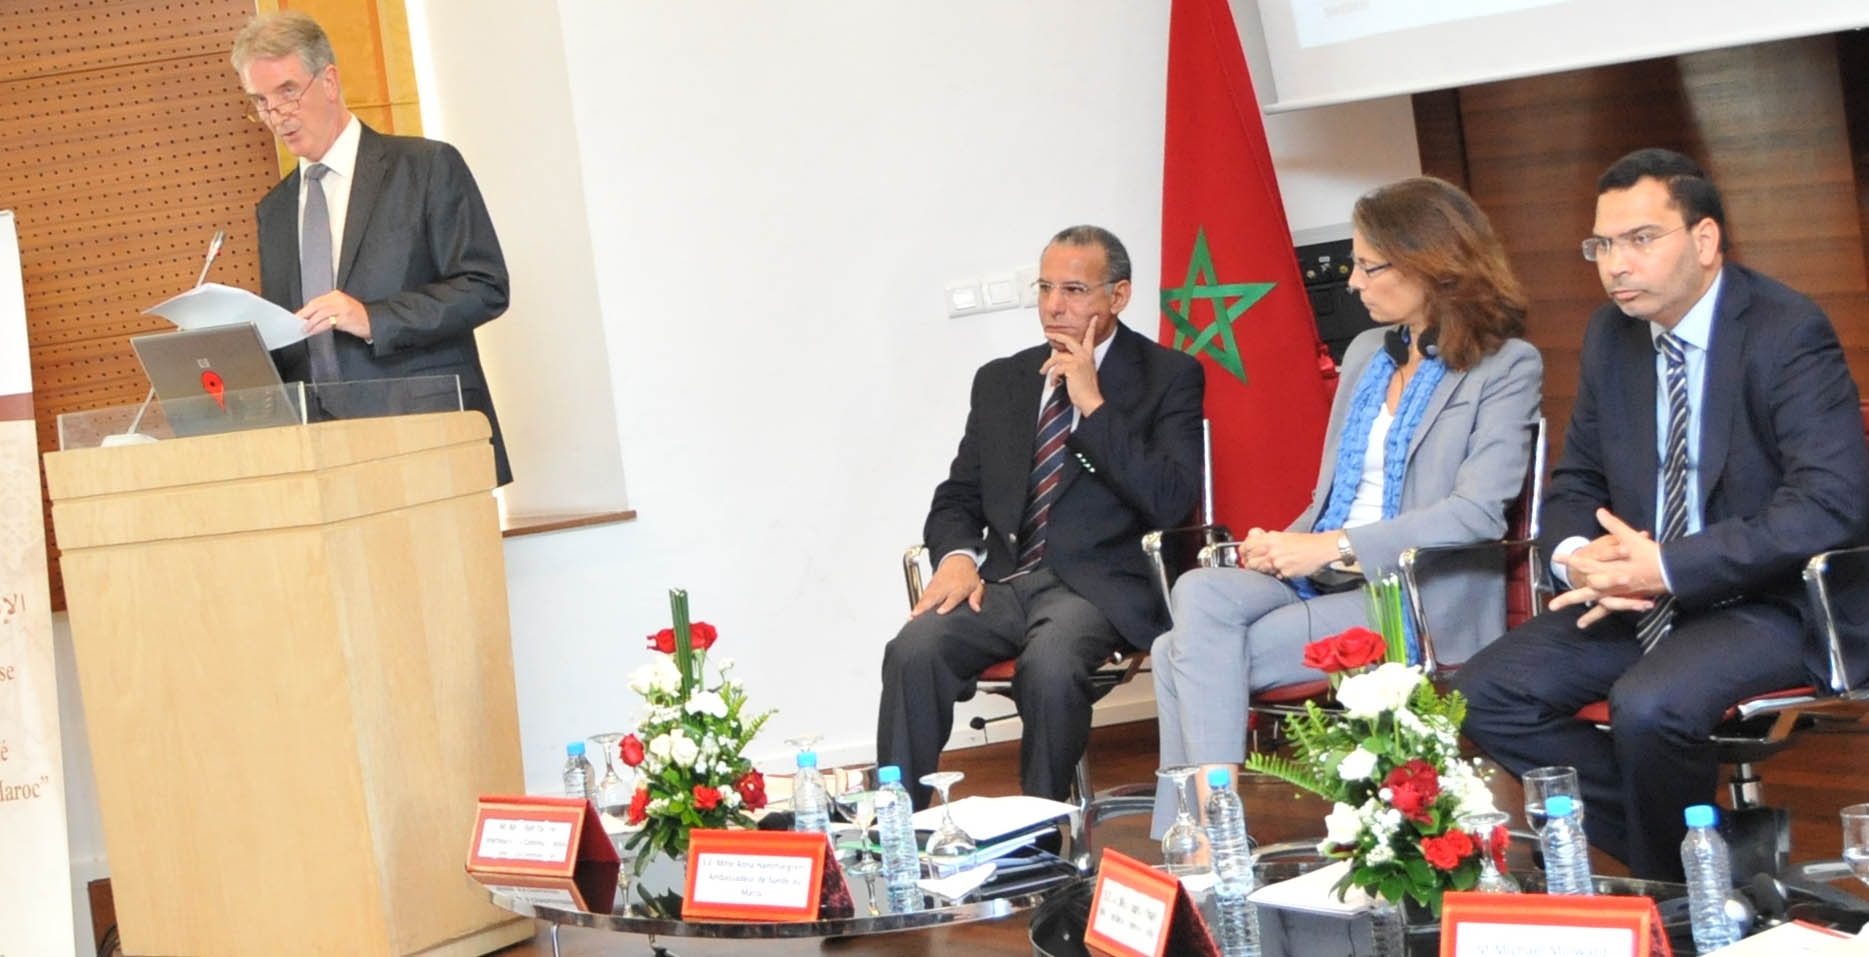 المغرب ينتزع اعتراف اليونسكو بجهوده في النهوض بحرية الصحافة